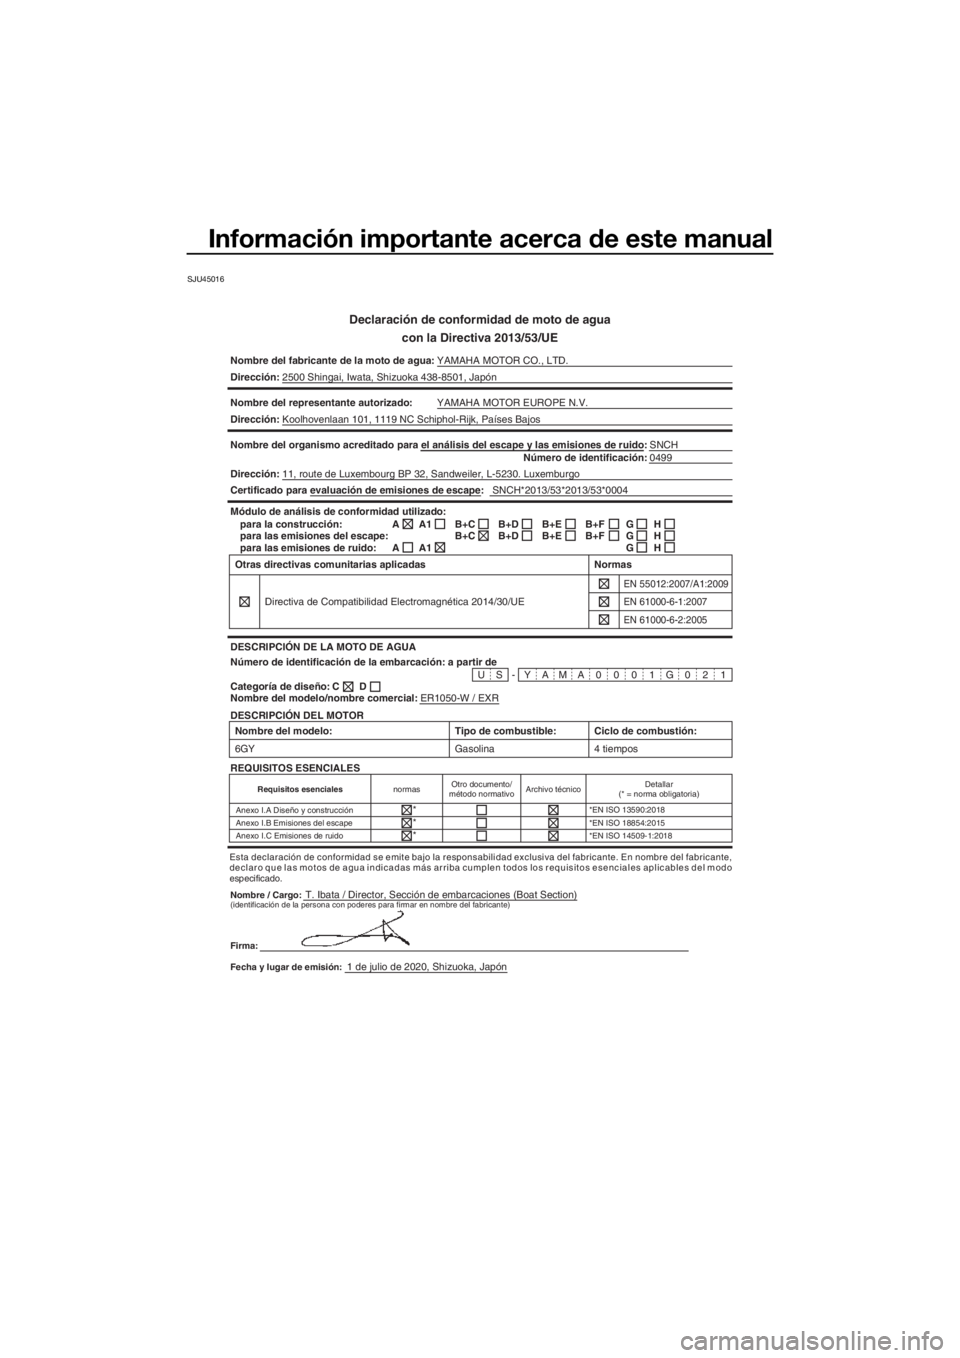 YAMAHA FJR1300 2021  Manuale de Empleo (in Spanish) Información importante acerca de este manual
SJU45016
Declaración de conformidad de moto de agua
con la Directiva 2013/53/UE
Nombre del fabricante de la moto de a gua:YAMAHA MOTOR CO., LTD.
Direcci�